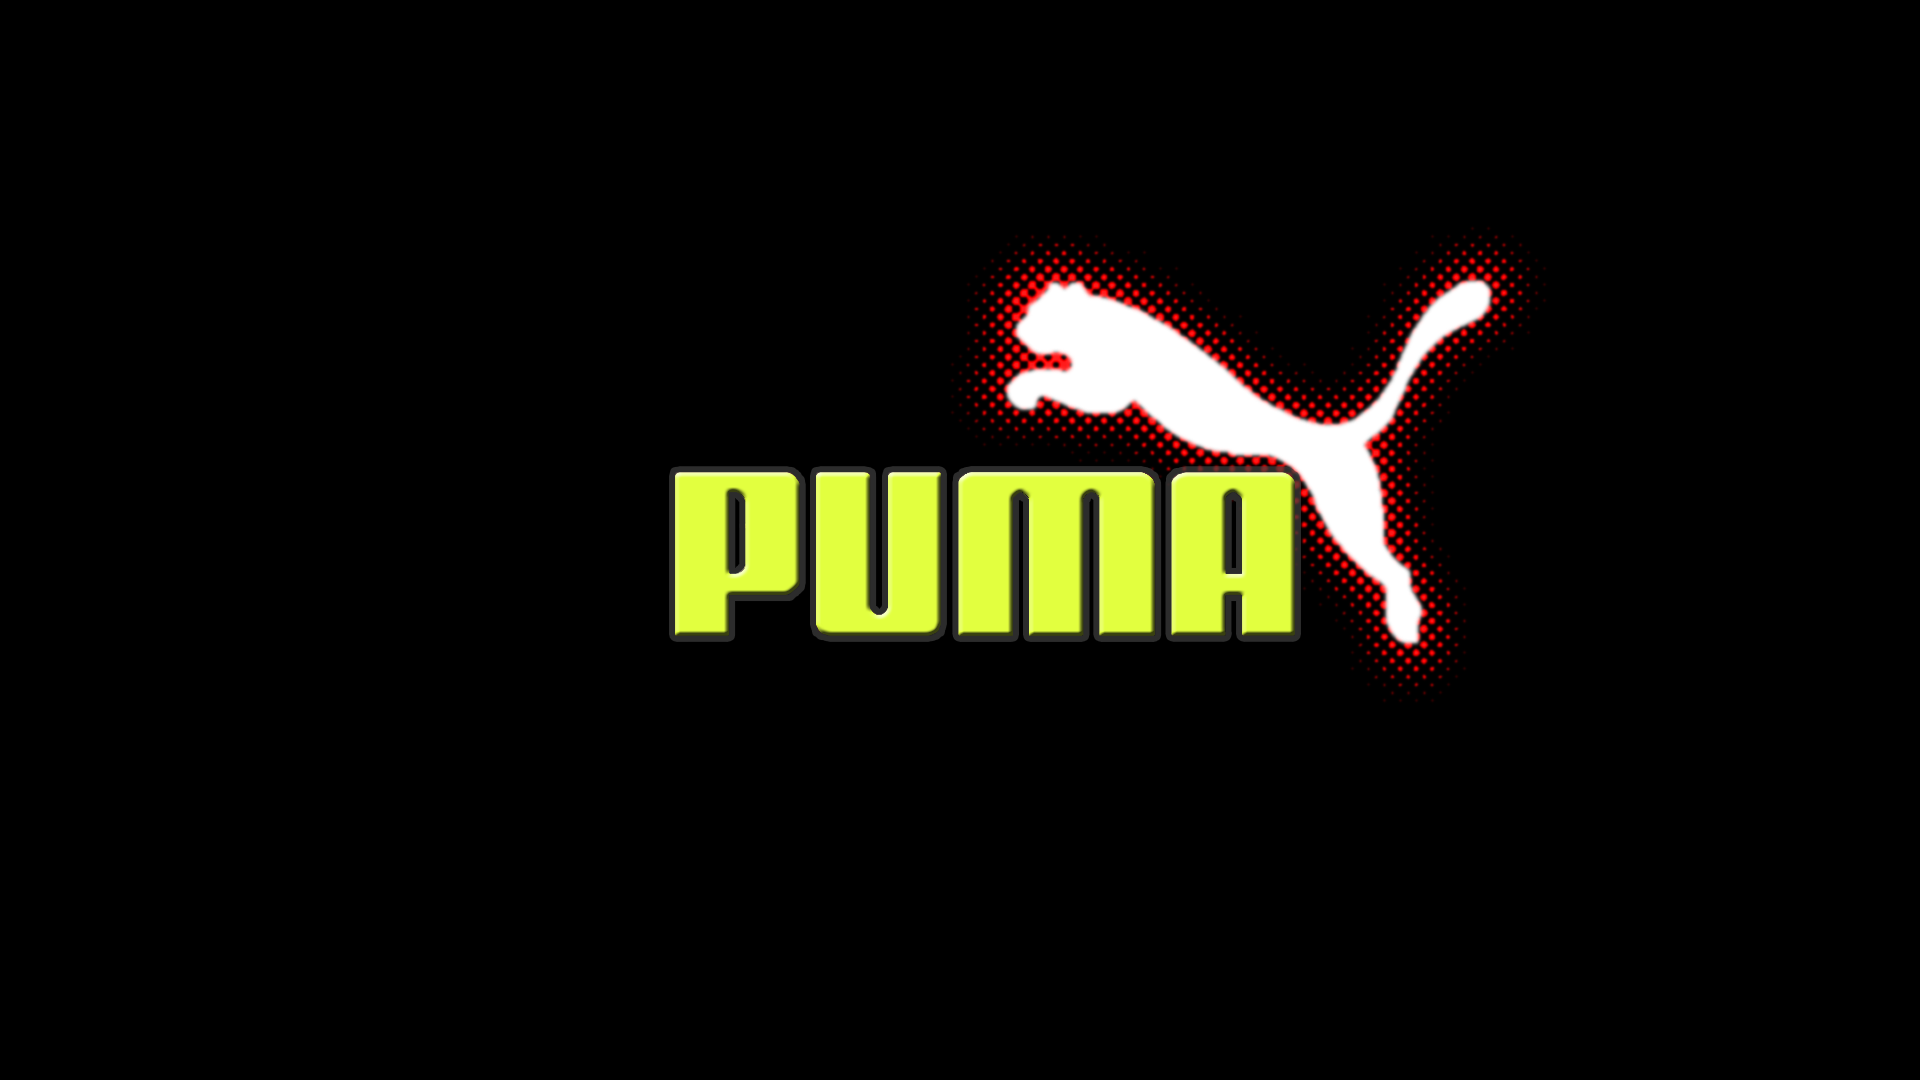 puma logo wallpaper 4644 hd wallpapers